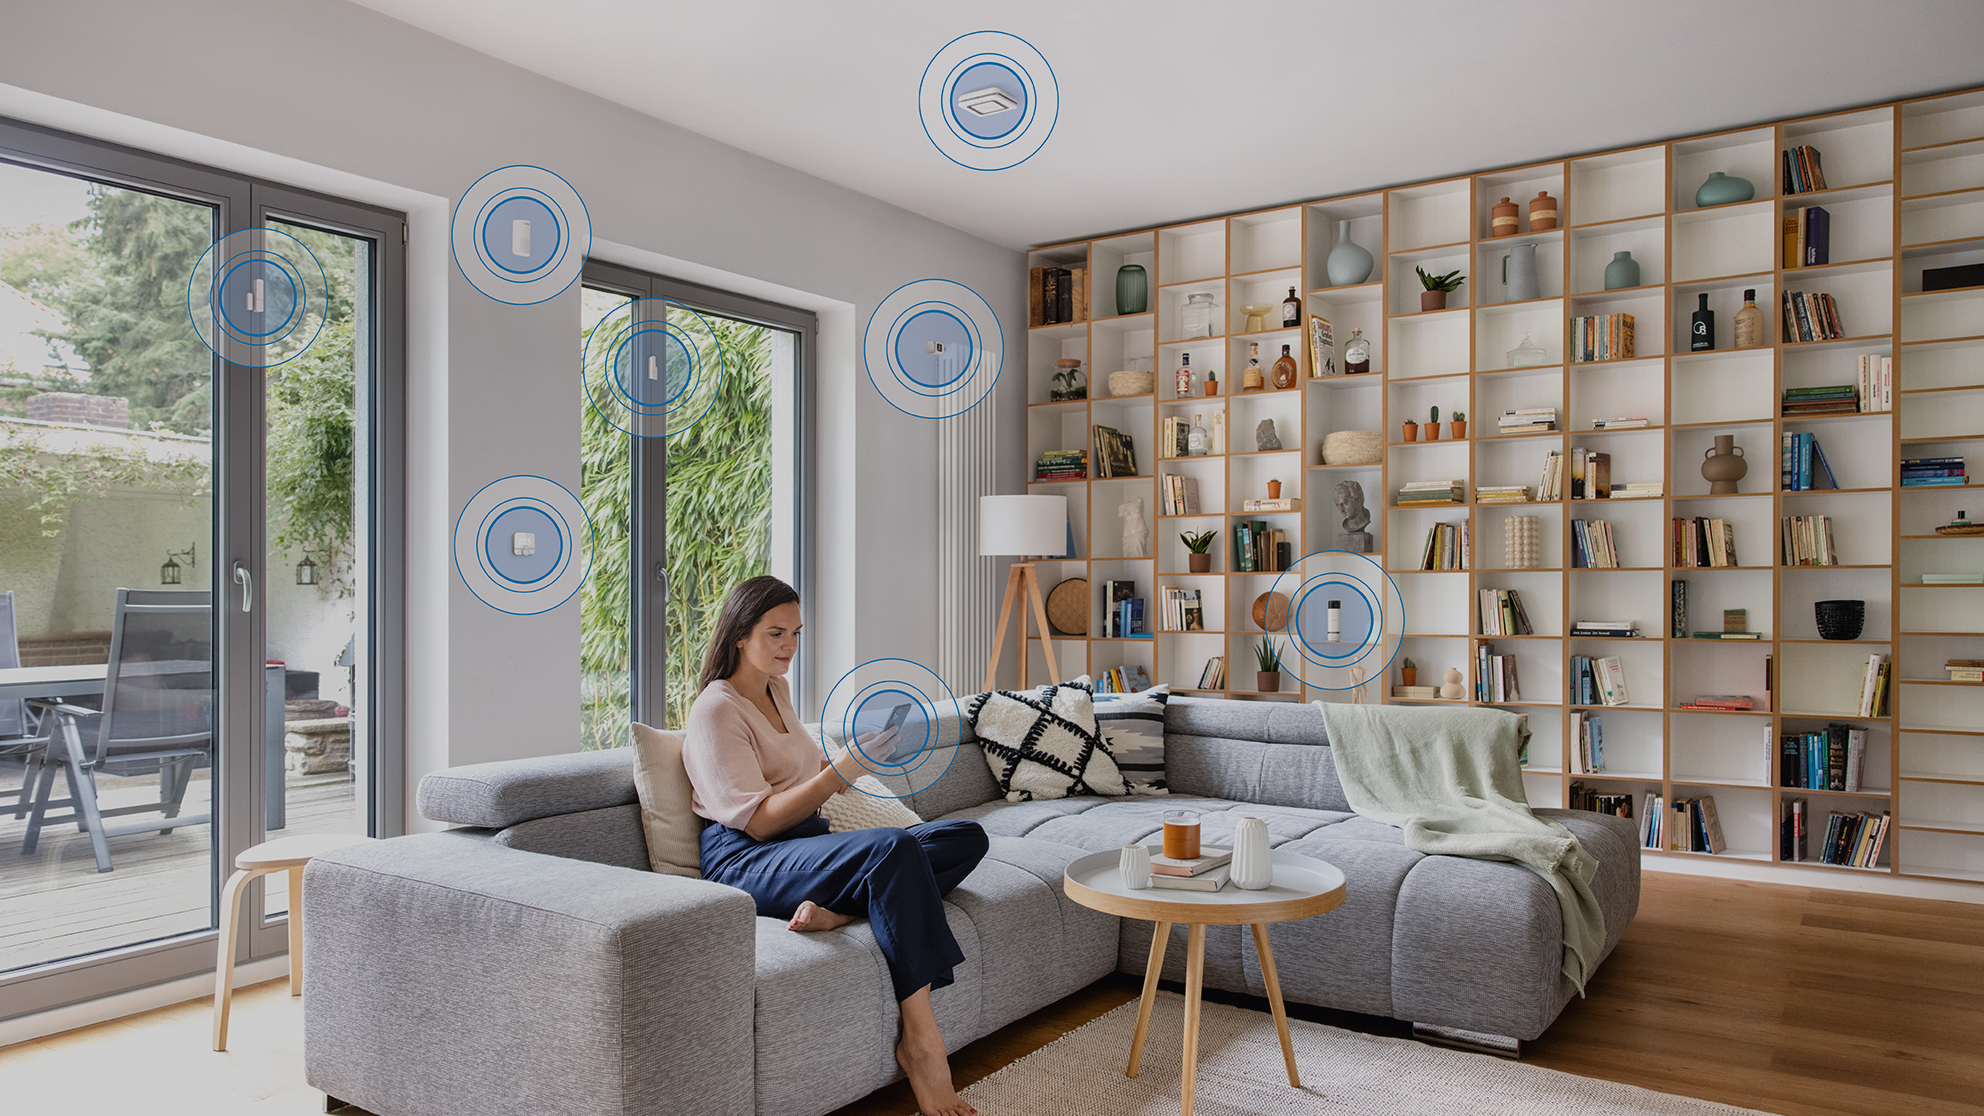 Höchster Wärmekomfort mit Buderus und Bosch Smart Home